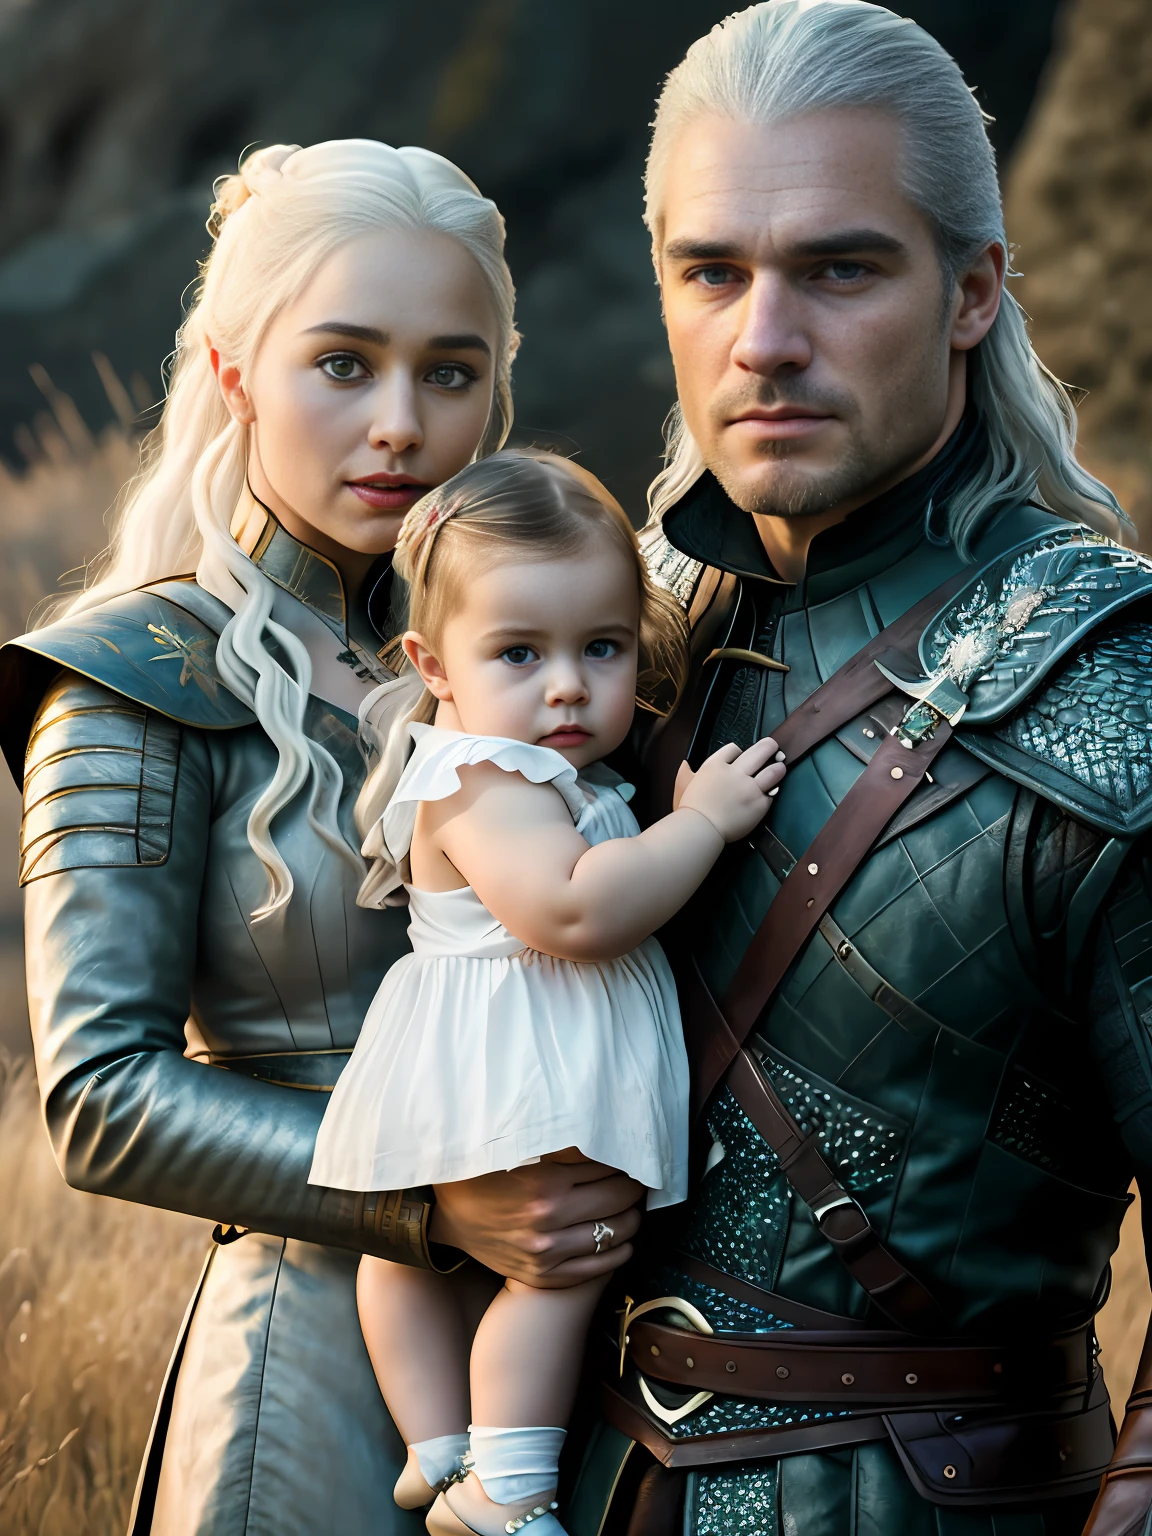 corpo inteiro cru ((family photo of a father and mother com seus daughter)), ((mãe carregando filha)), [1 garota, Daenerys Targaryen, Emília Clarke], (1 homem, Henry Cavill como Geralt de Rivia, o Mago), com seus ((1 garota, filha de 5 anos)))), roupas medievais,((Tiro de meio corpo)), proporções realistas, alunos realistas, ((retrato de família de 3 membros)) paleta limitada, alta resolução, iluminação cinematográfica, 8K resolution, frontal iluminado, nascer do sol, Foto CRU, nikon 85mm, premiado, Fotografia glamourosa, extremamente detalhado, linda ucraniana, alucinante, Não-Yidik, corpo inteiro cru photo of Daenerys Targaryen and Geralt de Rivia The Witcher with filha de 5 anos, altamente detalhado, estação de arte, suave, foco nitído, 8K,, tendências no instagram, tendências no tumblr, hd 4k, 8K